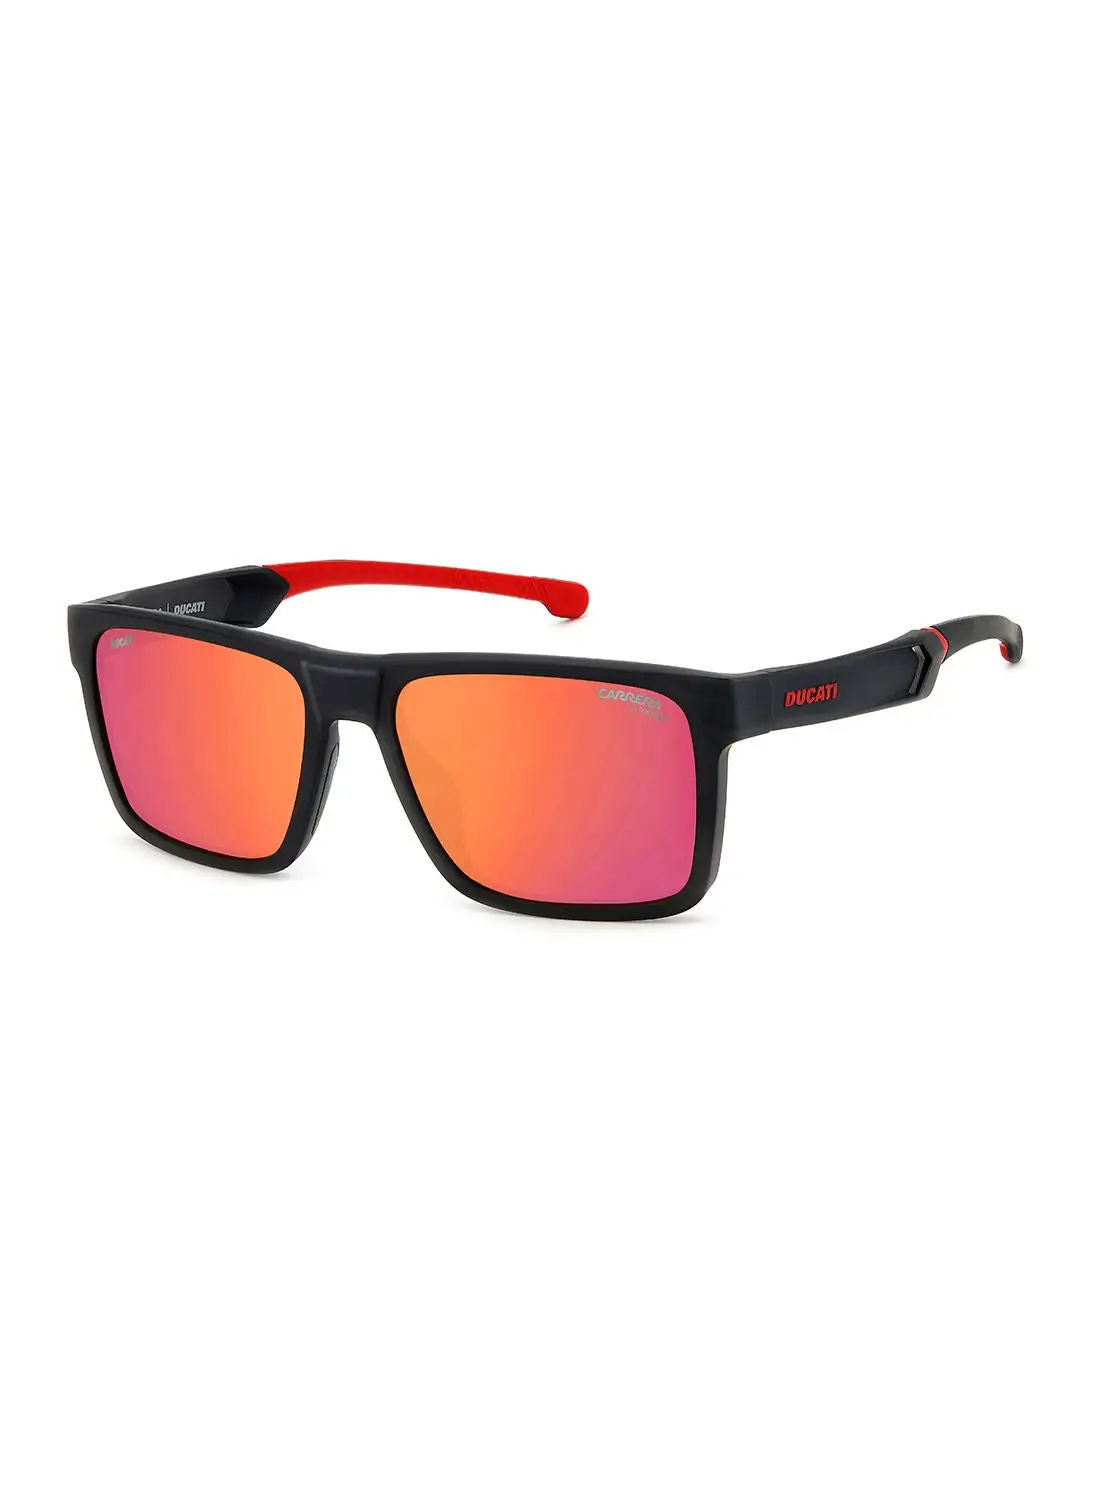 نظارة كاريرا الشمسية مستطيلة الشكل للحماية من الأشعة فوق البنفسجية للرجال - Carduc 021/S أسود أحمر 55 - مقاس العدسة: 55 ملم